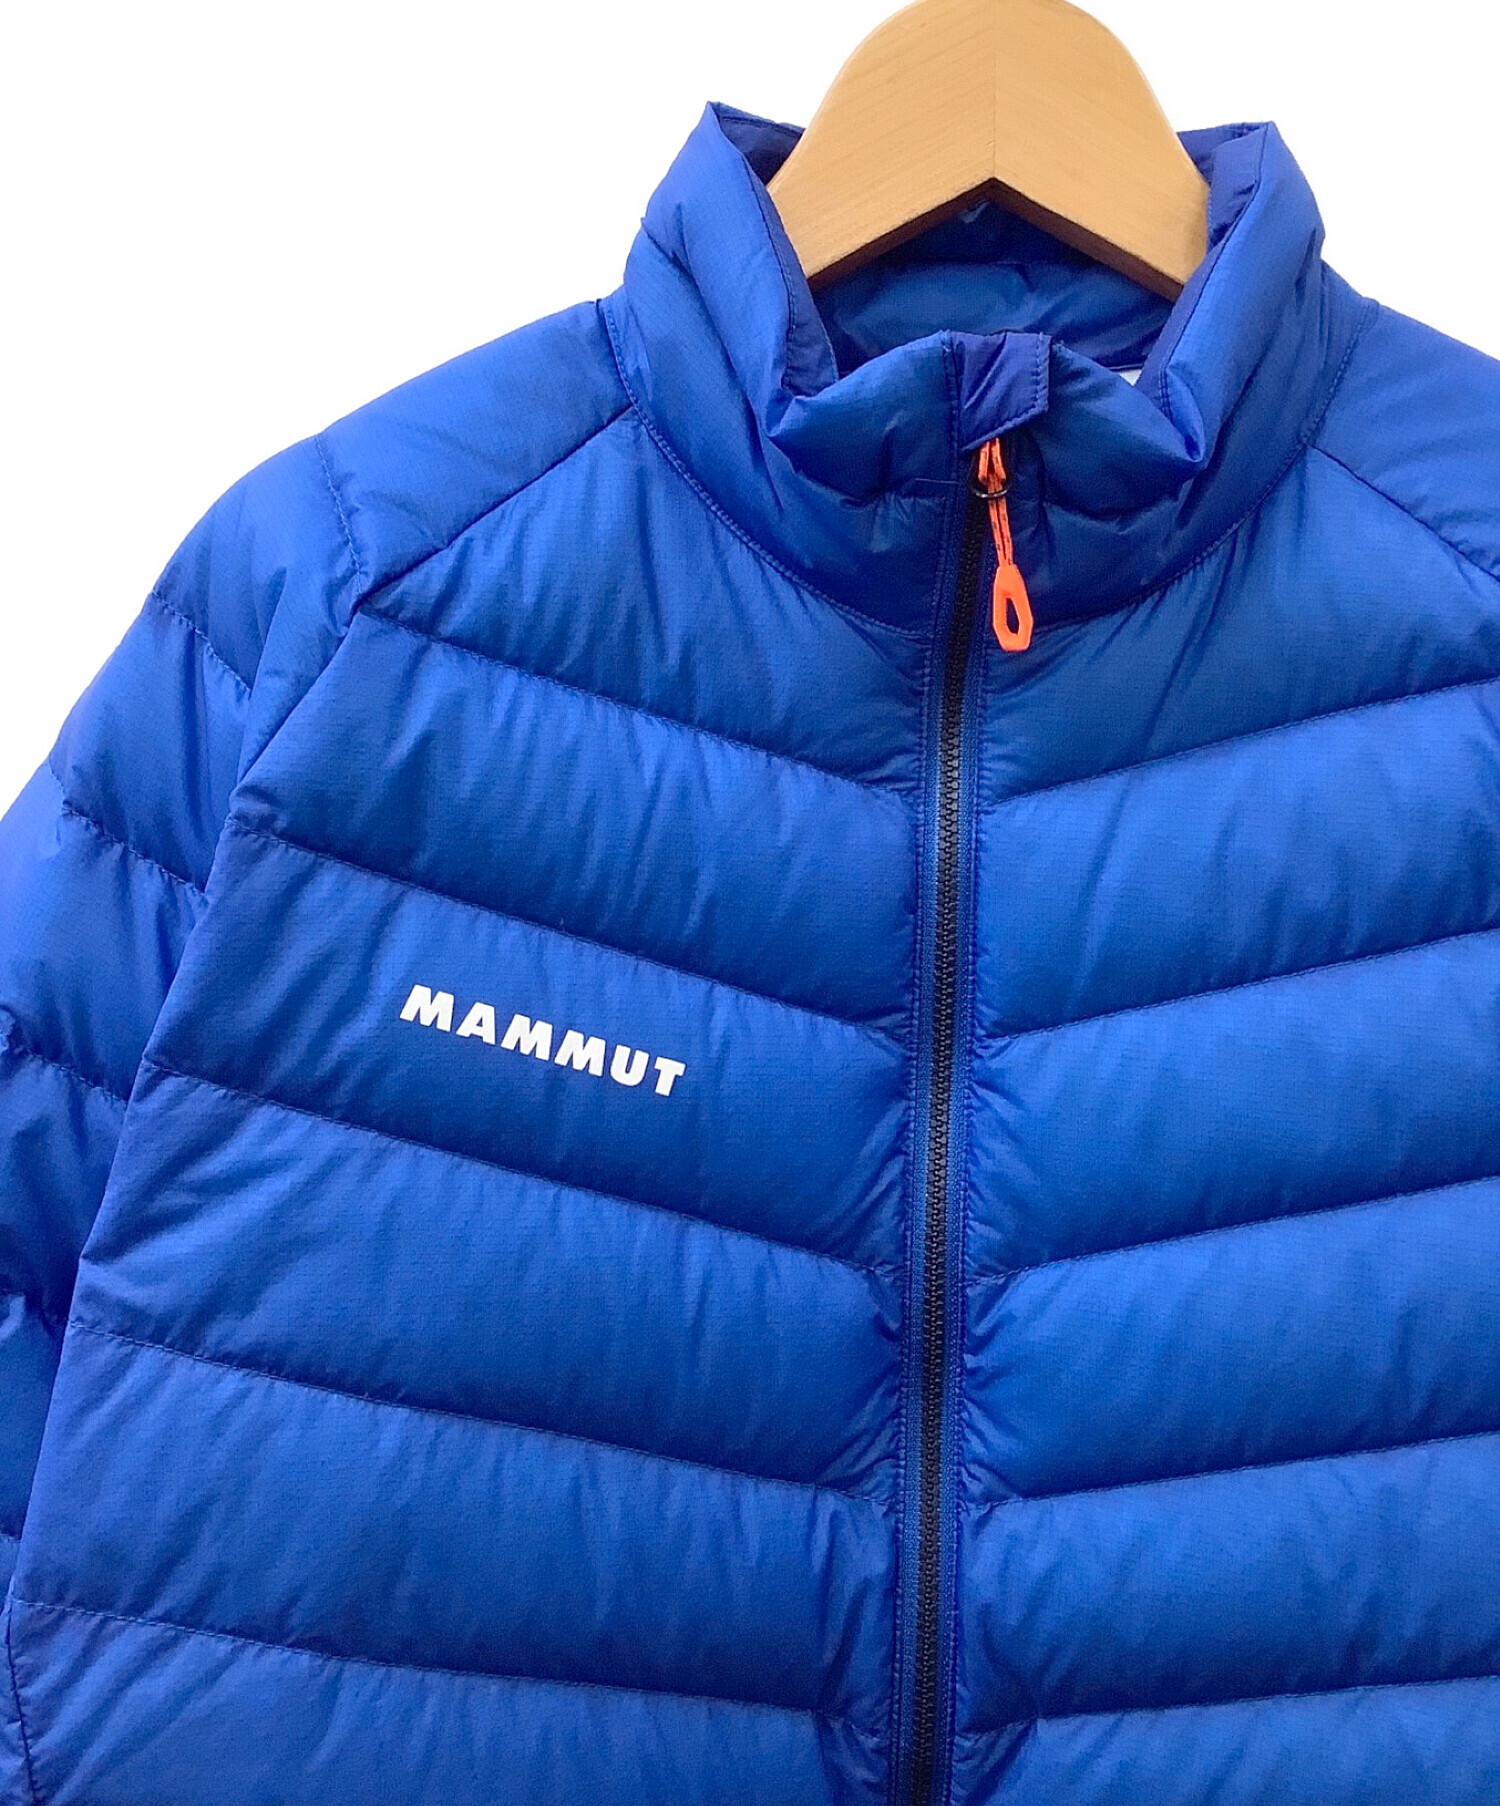 MAMMUT (マムート) ダウンジャケット ブルー サイズ:L